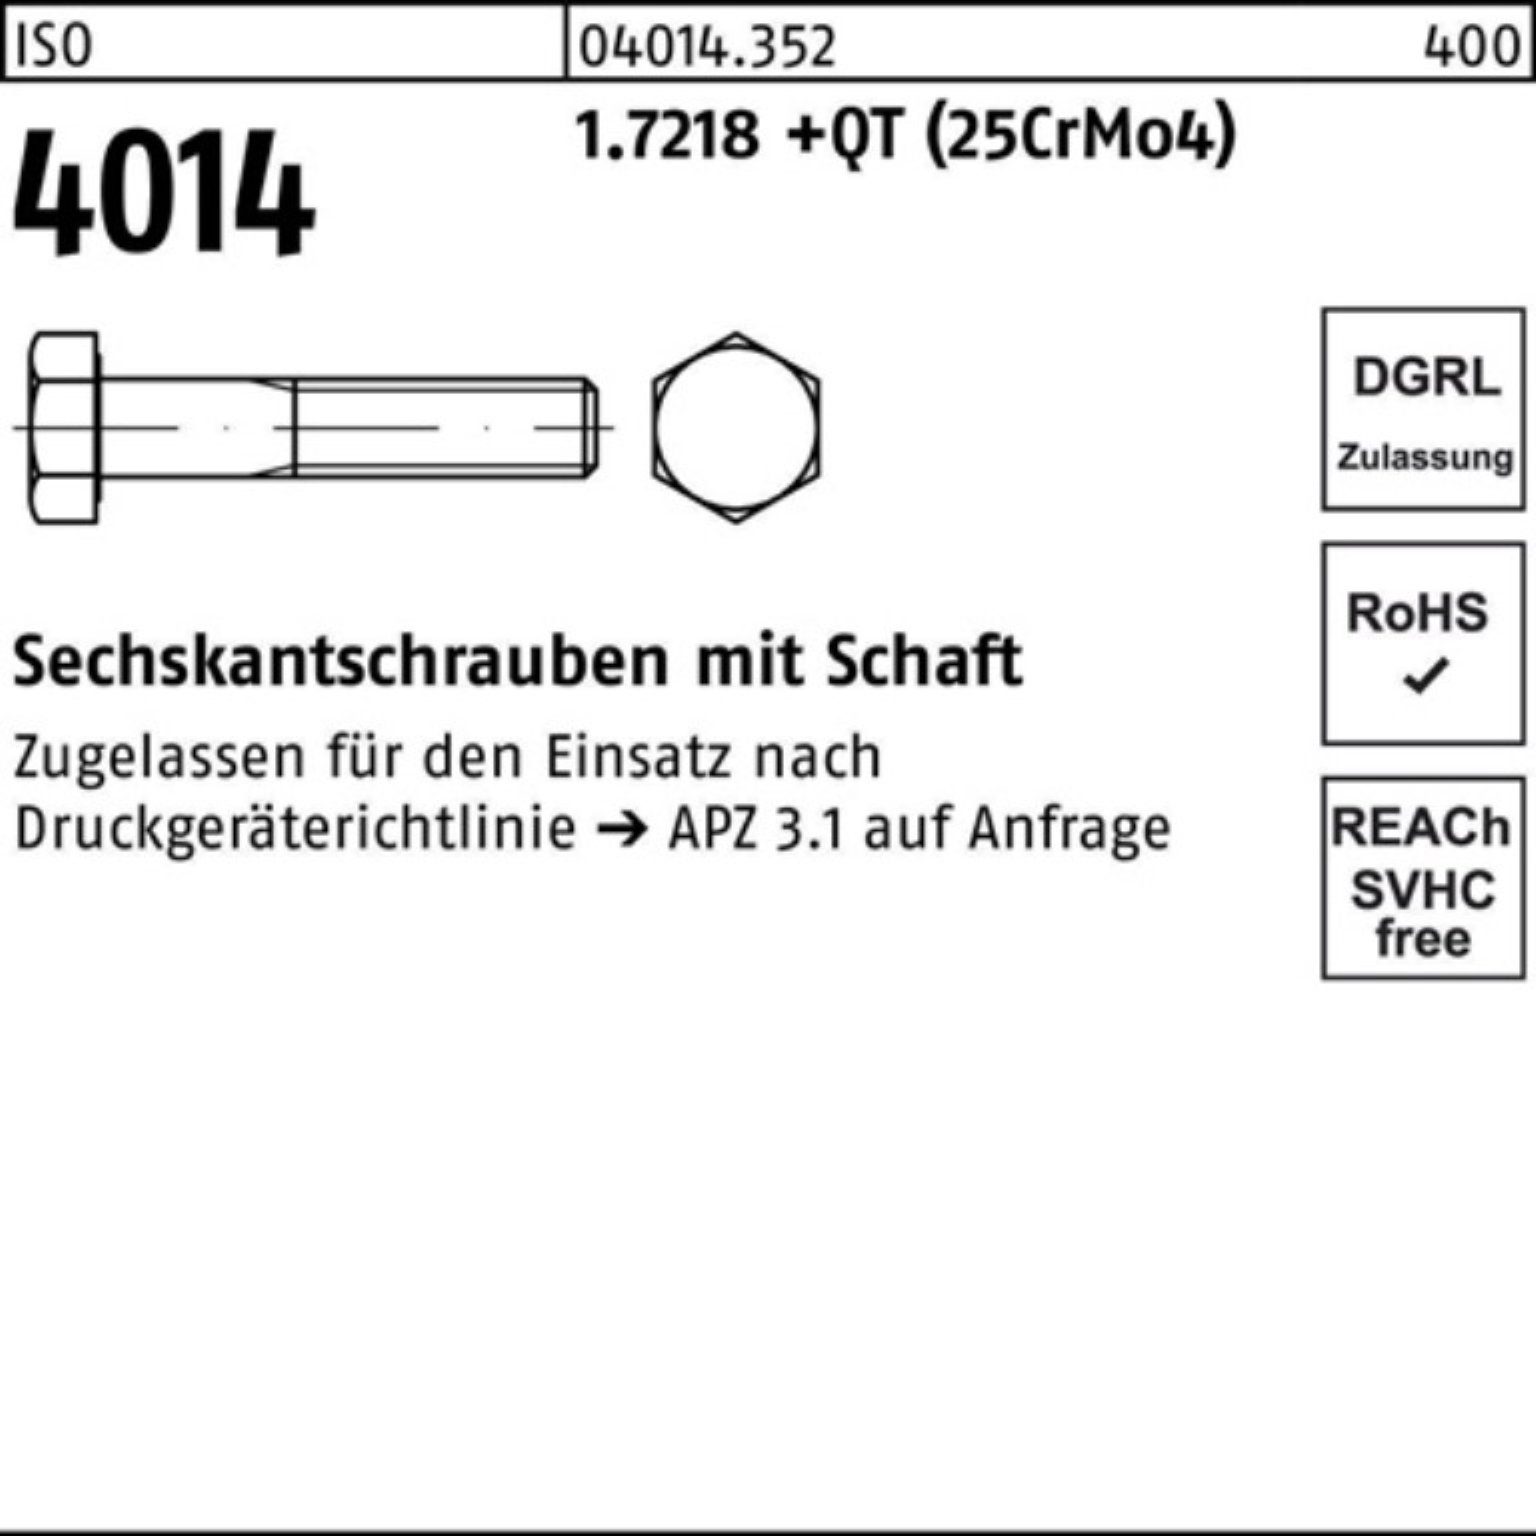 Bufab Sechskantschraube Pack Schaft 1.7218 M27x 4014 ISO (25Cr 100er Sechskantschraube +QT 190